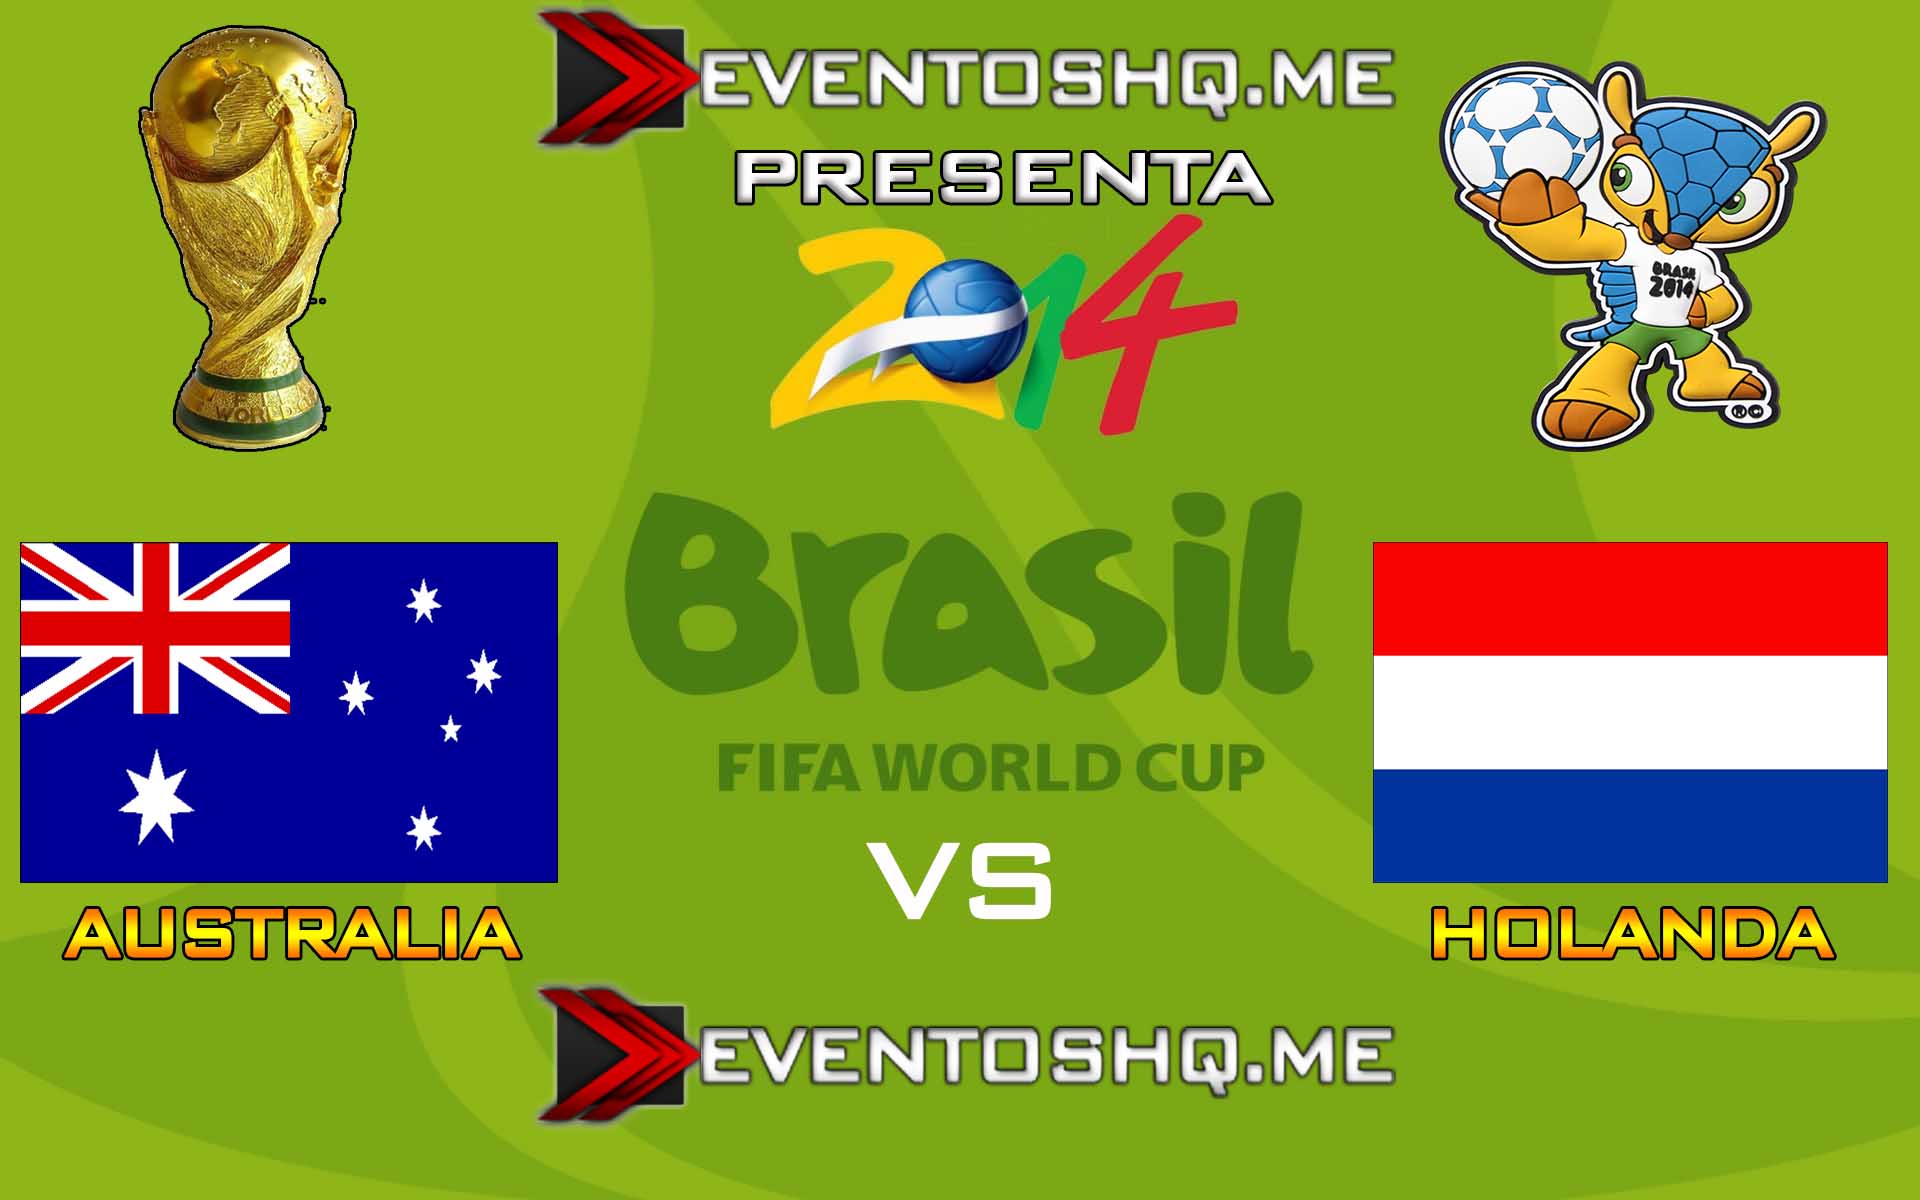 Ver en Vivo Australia vs Holanda Mundial Brasil 2014 www.eventoshq.me